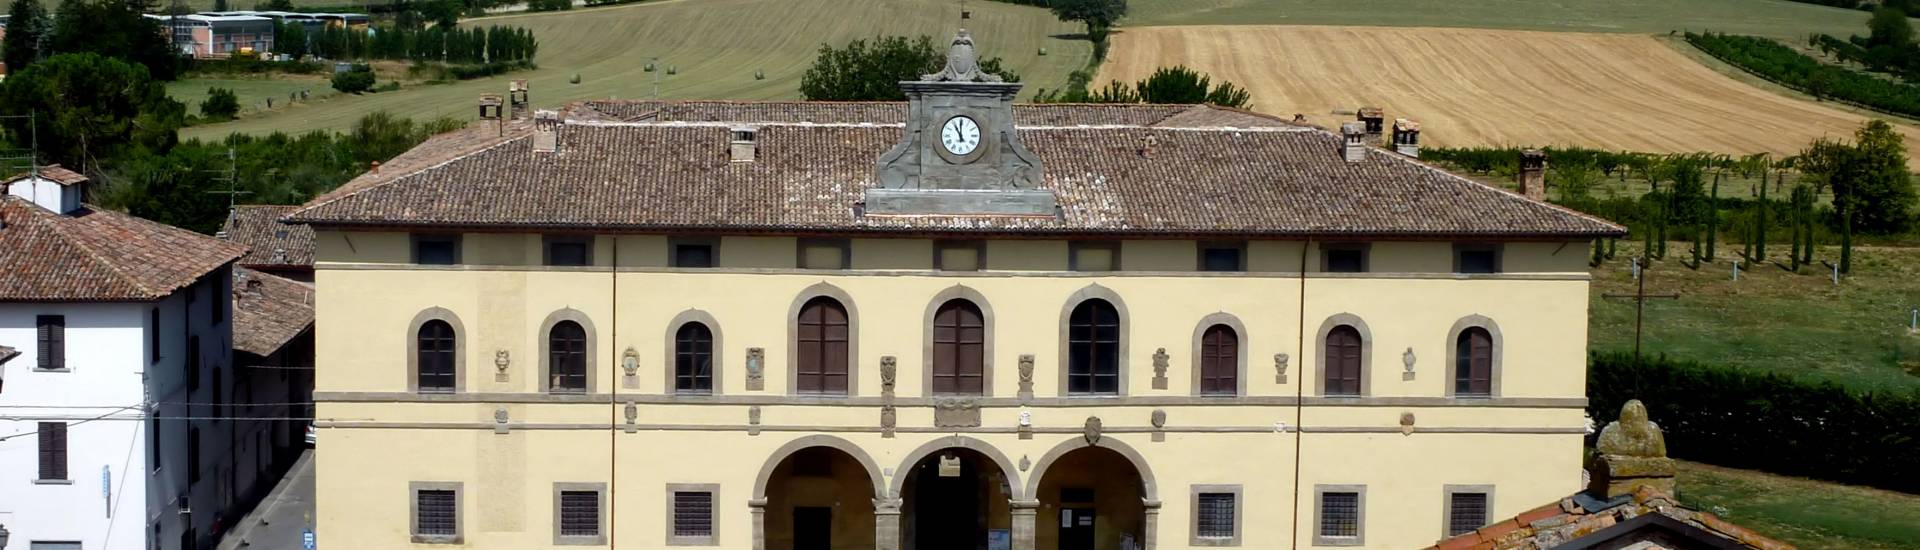 Palazzo dei Commissari e del Pretorio - Terra del Sole - Palazzo Pretorio e panorama photo credits: |Battistini| - Pro loco